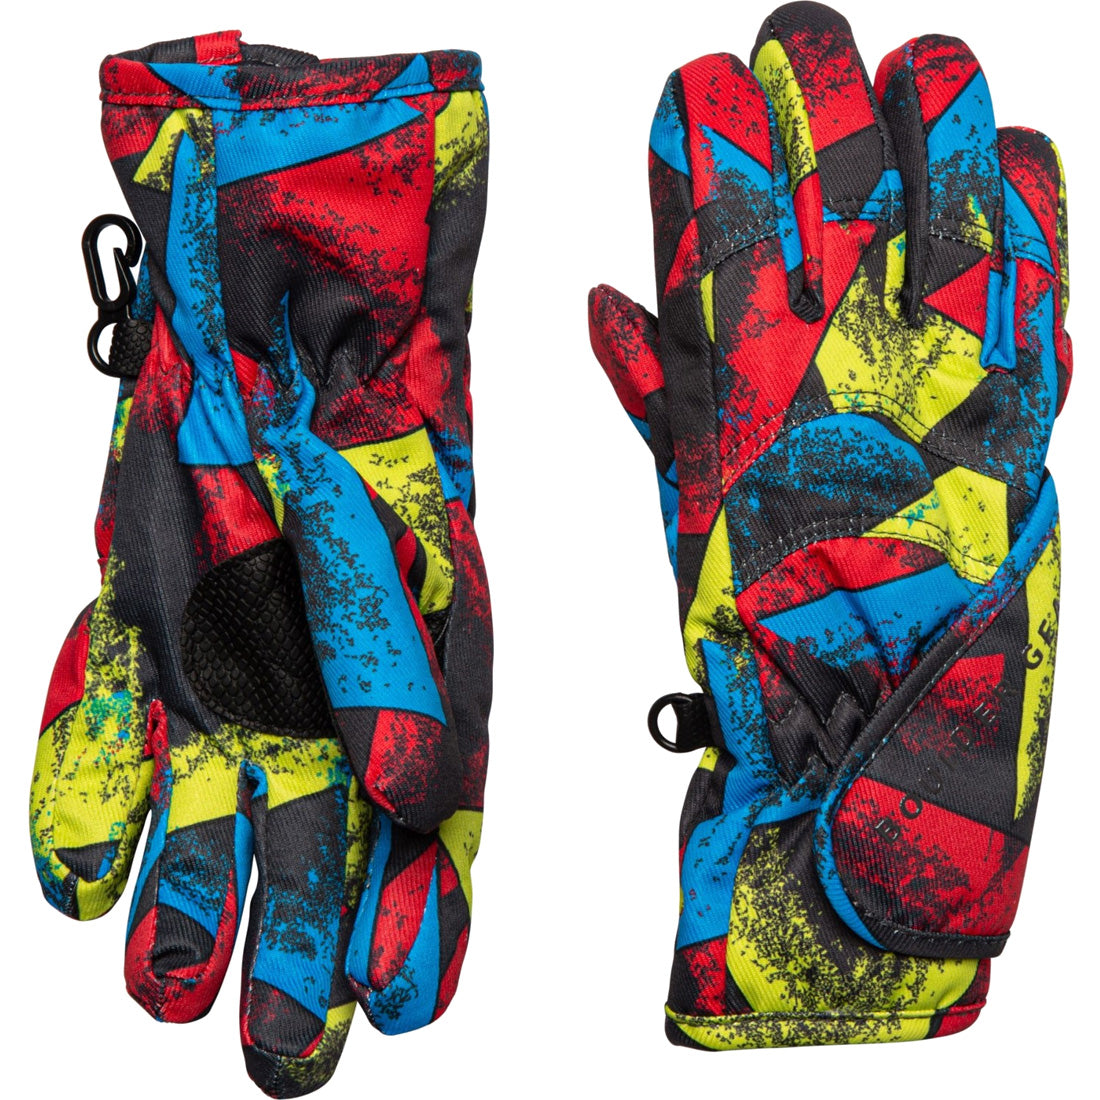 Boulder Gear Flurry Glove - Kids